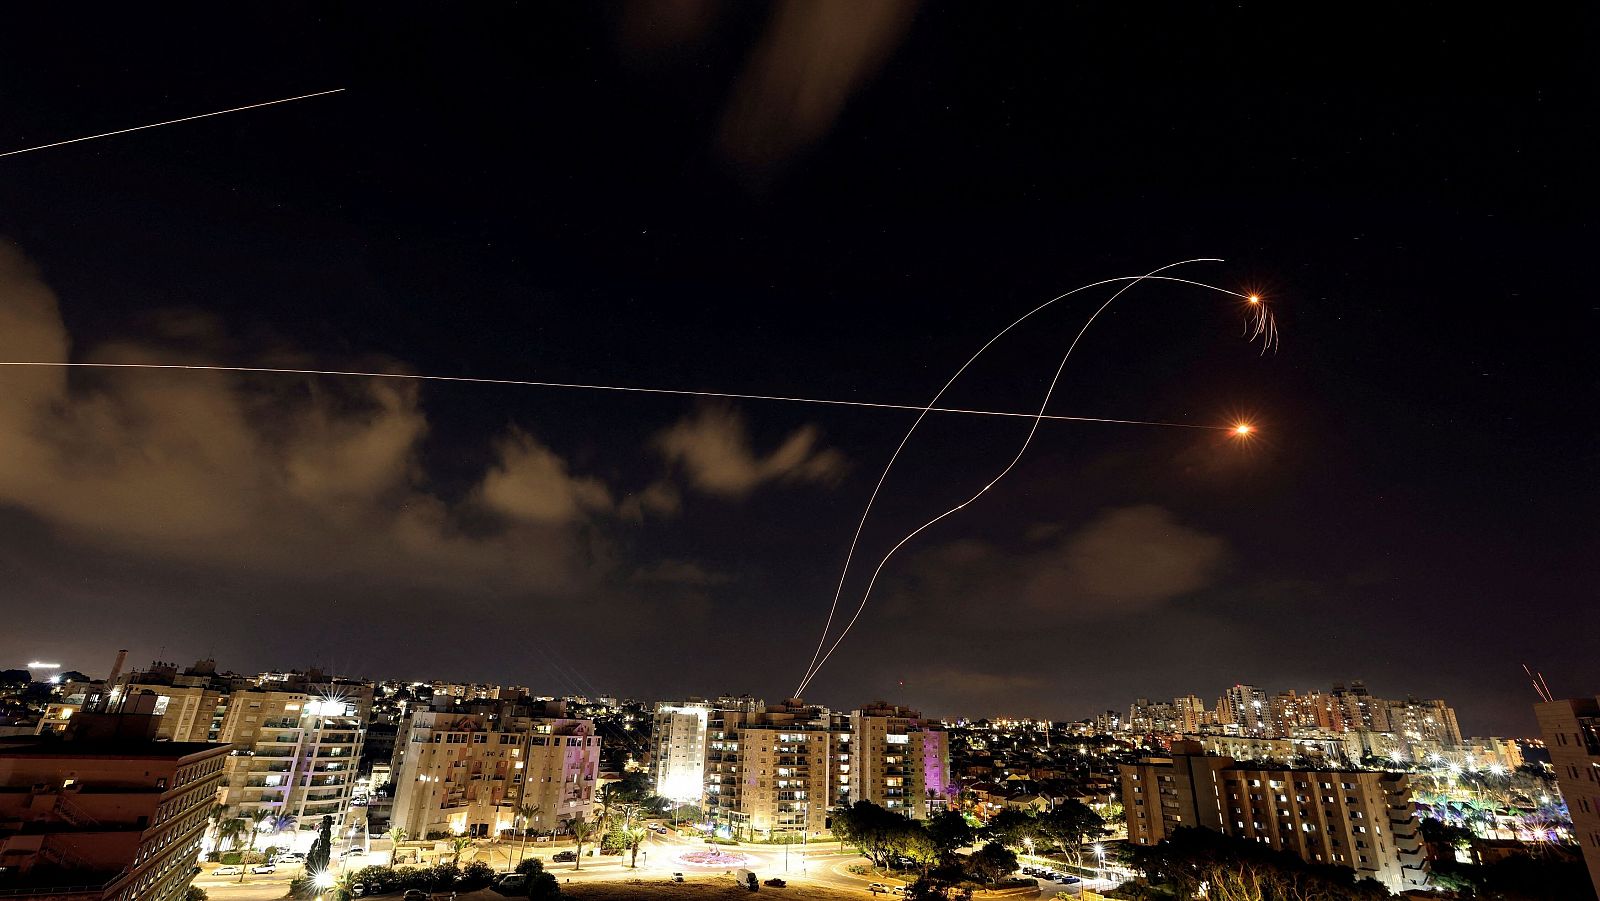 Guerra de Israel, última hora: imagen del sistema antimisiles israelí Iron Dome interceptado cohetes lanzados desde la Franja de Gaza